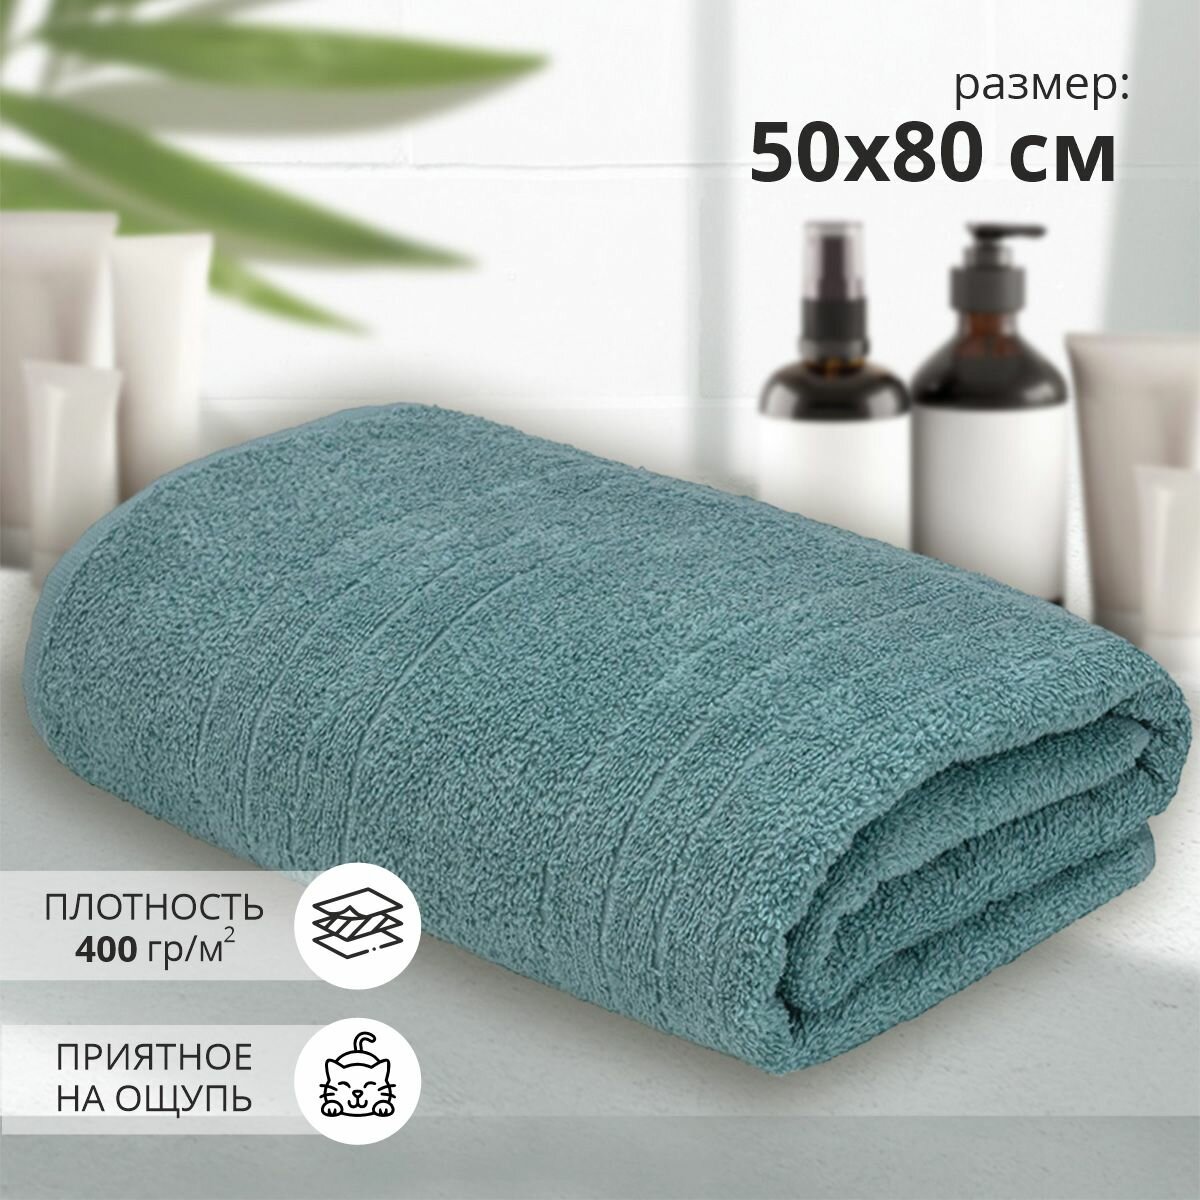 Махровое полотенце для рук и лица Гелир 50х80 см /темно-зеленый/ плотность 400 гр/кв. м.